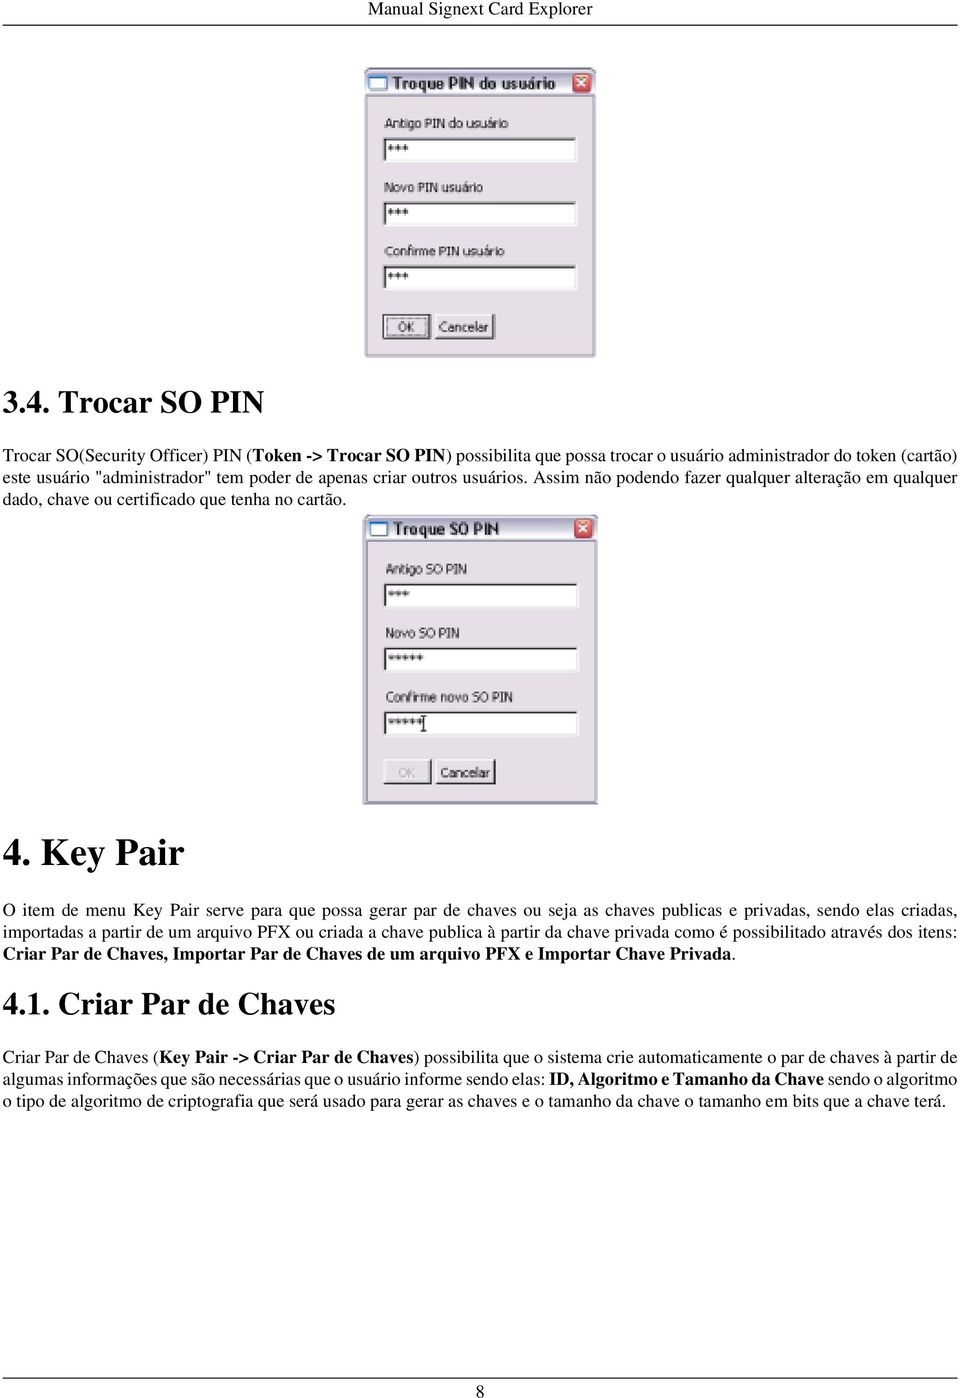 Key Pair O item de menu Key Pair serve para que possa gerar par de chaves ou seja as chaves publicas e privadas, sendo elas criadas, importadas a partir de um arquivo PFX ou criada a chave publica à